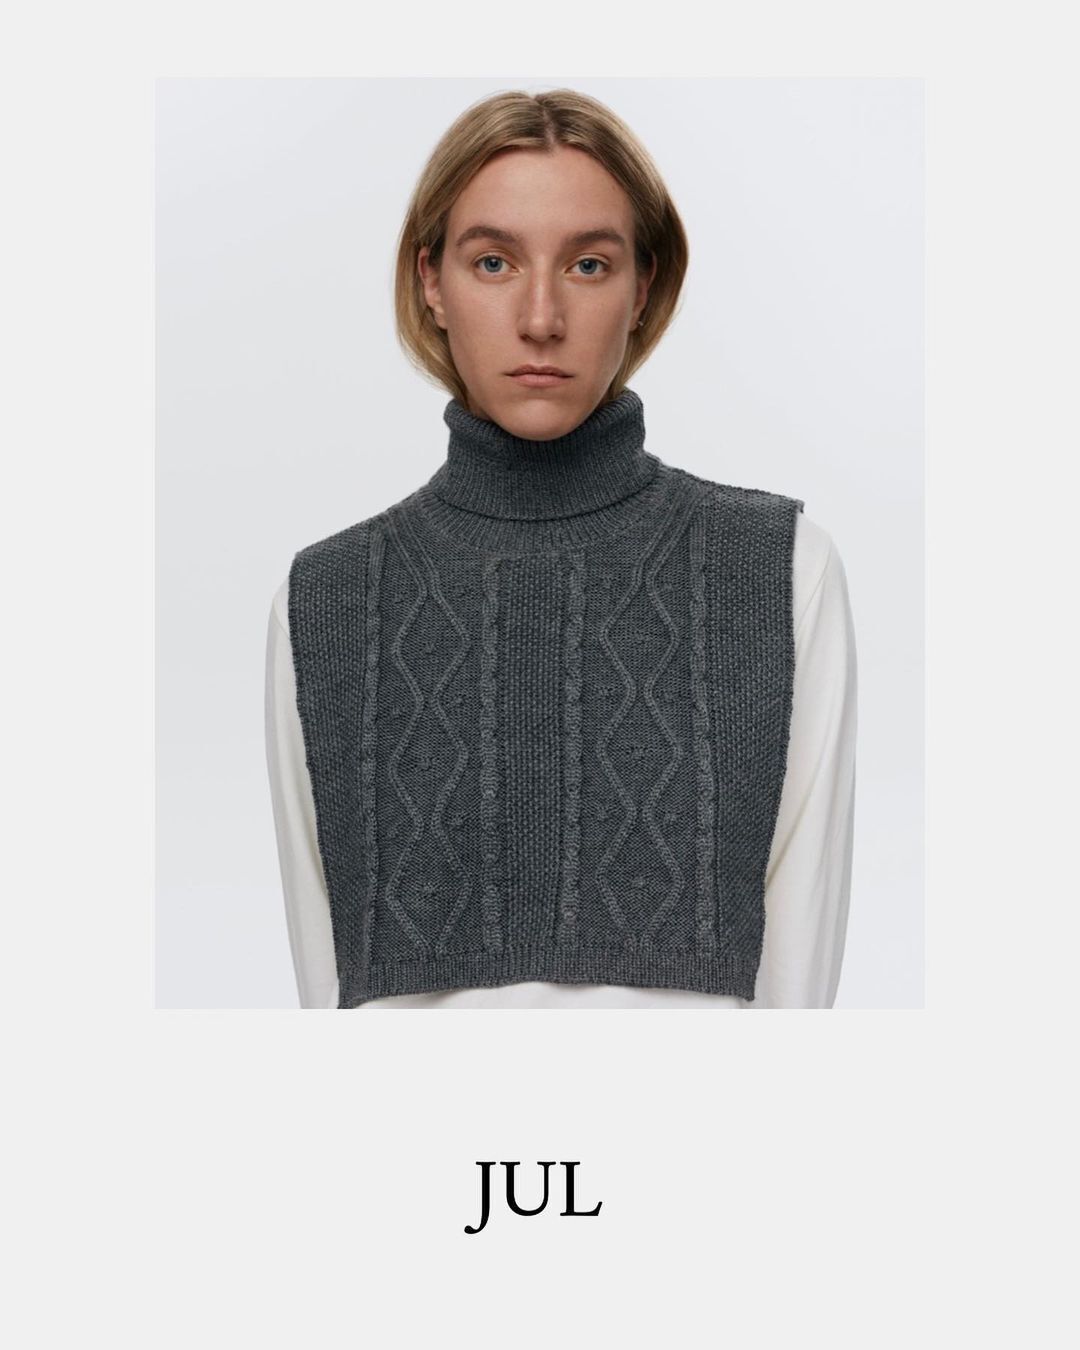 Модный бренд Jul показал, как комфортно можно утеплить шею и грудину